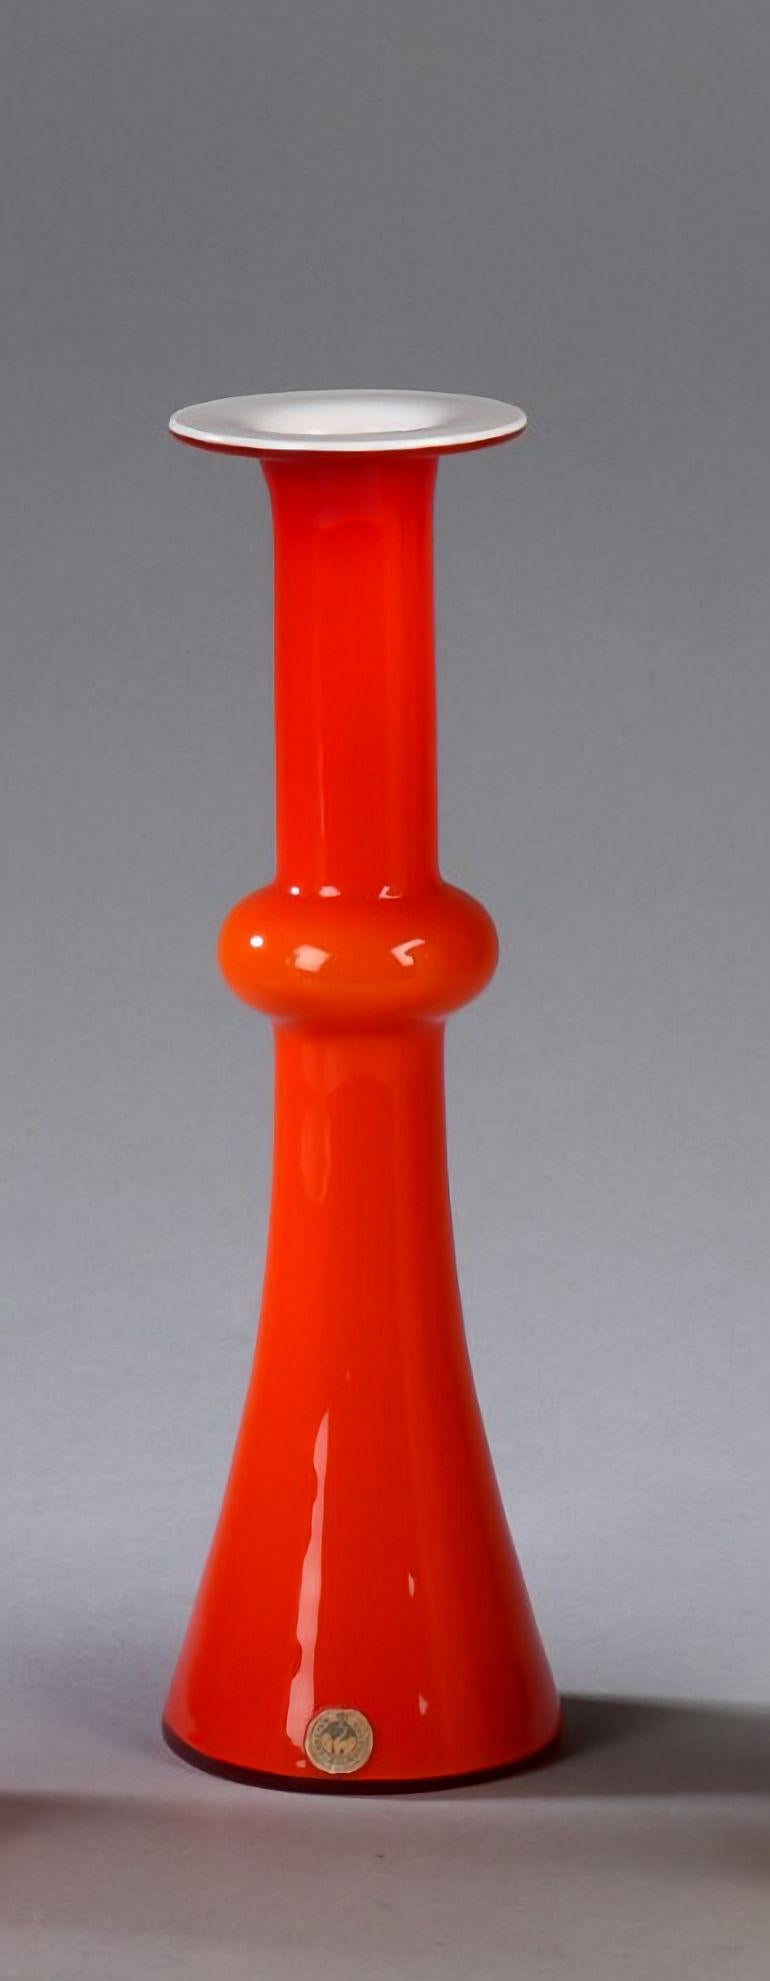 Vase soufflé à la bouche en verre opalin rouge par Christel et Christer Holmgren en 1968 pour Holmegaard.

Le vase est fabriqué en verre opale rouge vif soufflé à la main, à trois couches, avec une base en verre blanc, et porte toujours le Label